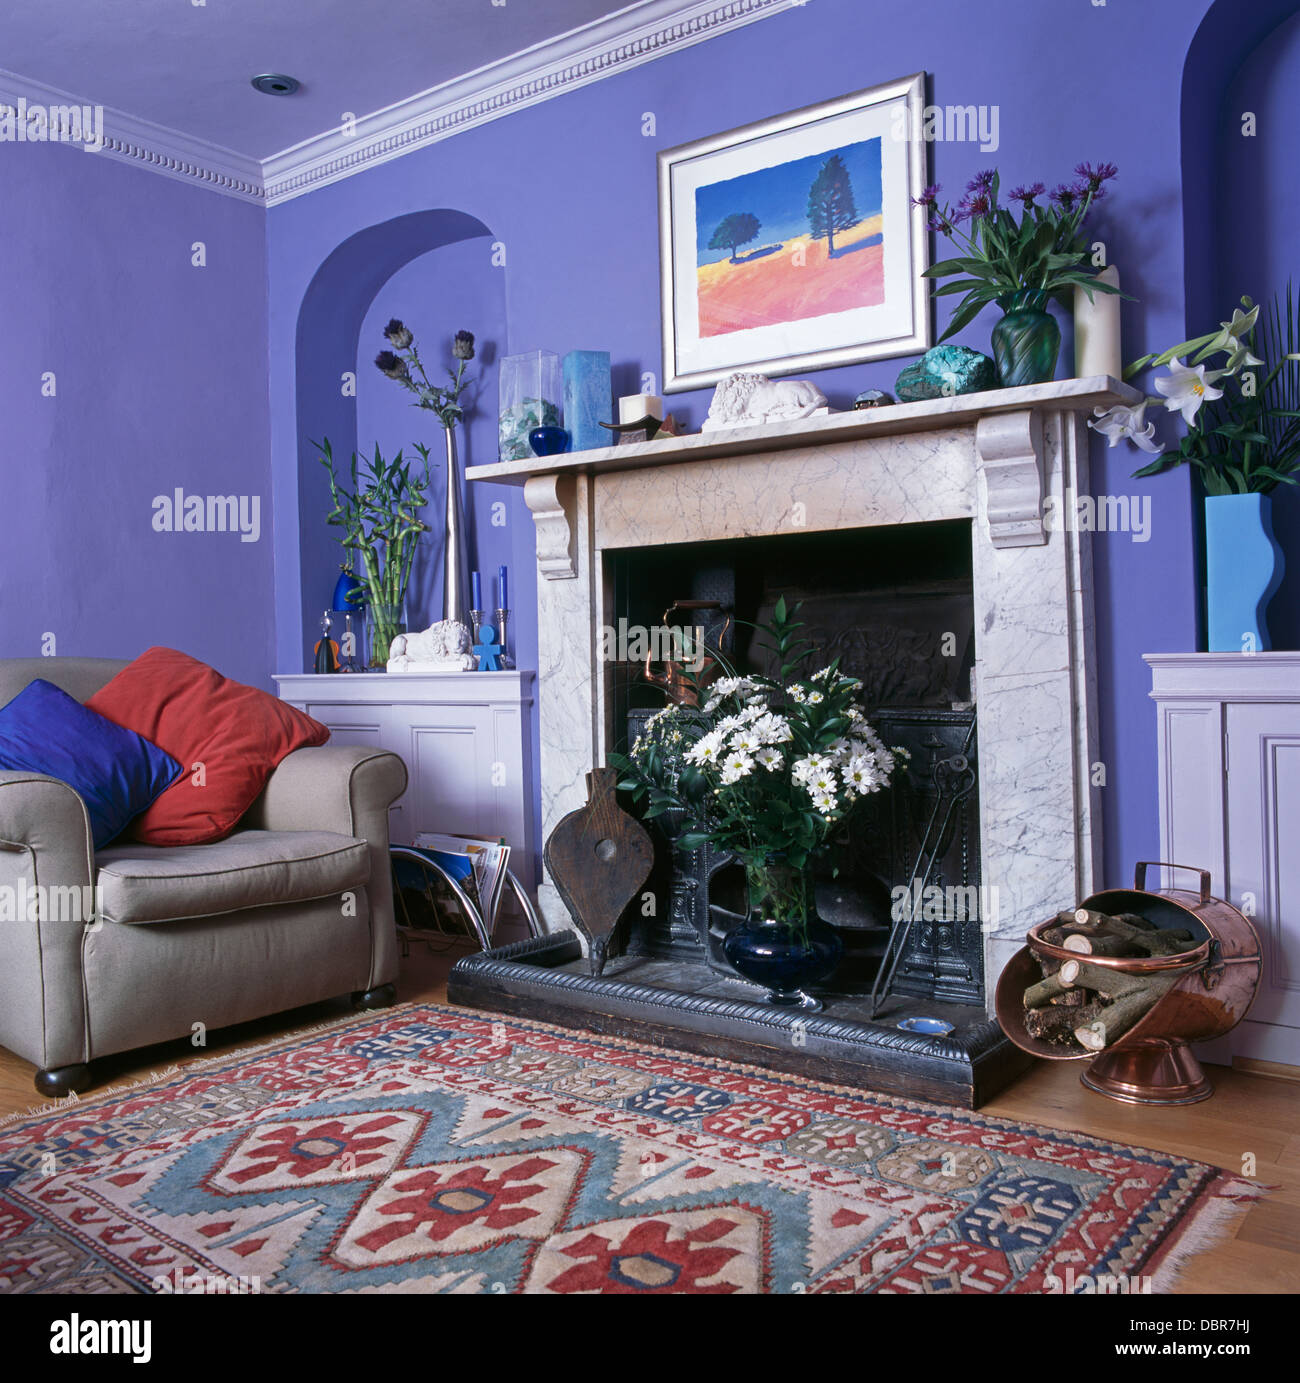 Tapis à motifs en face de la cheminée de marbre en bleu salon avec fauteuil gris avec des coussins rouge et bleu en face de l'alcôve Banque D'Images